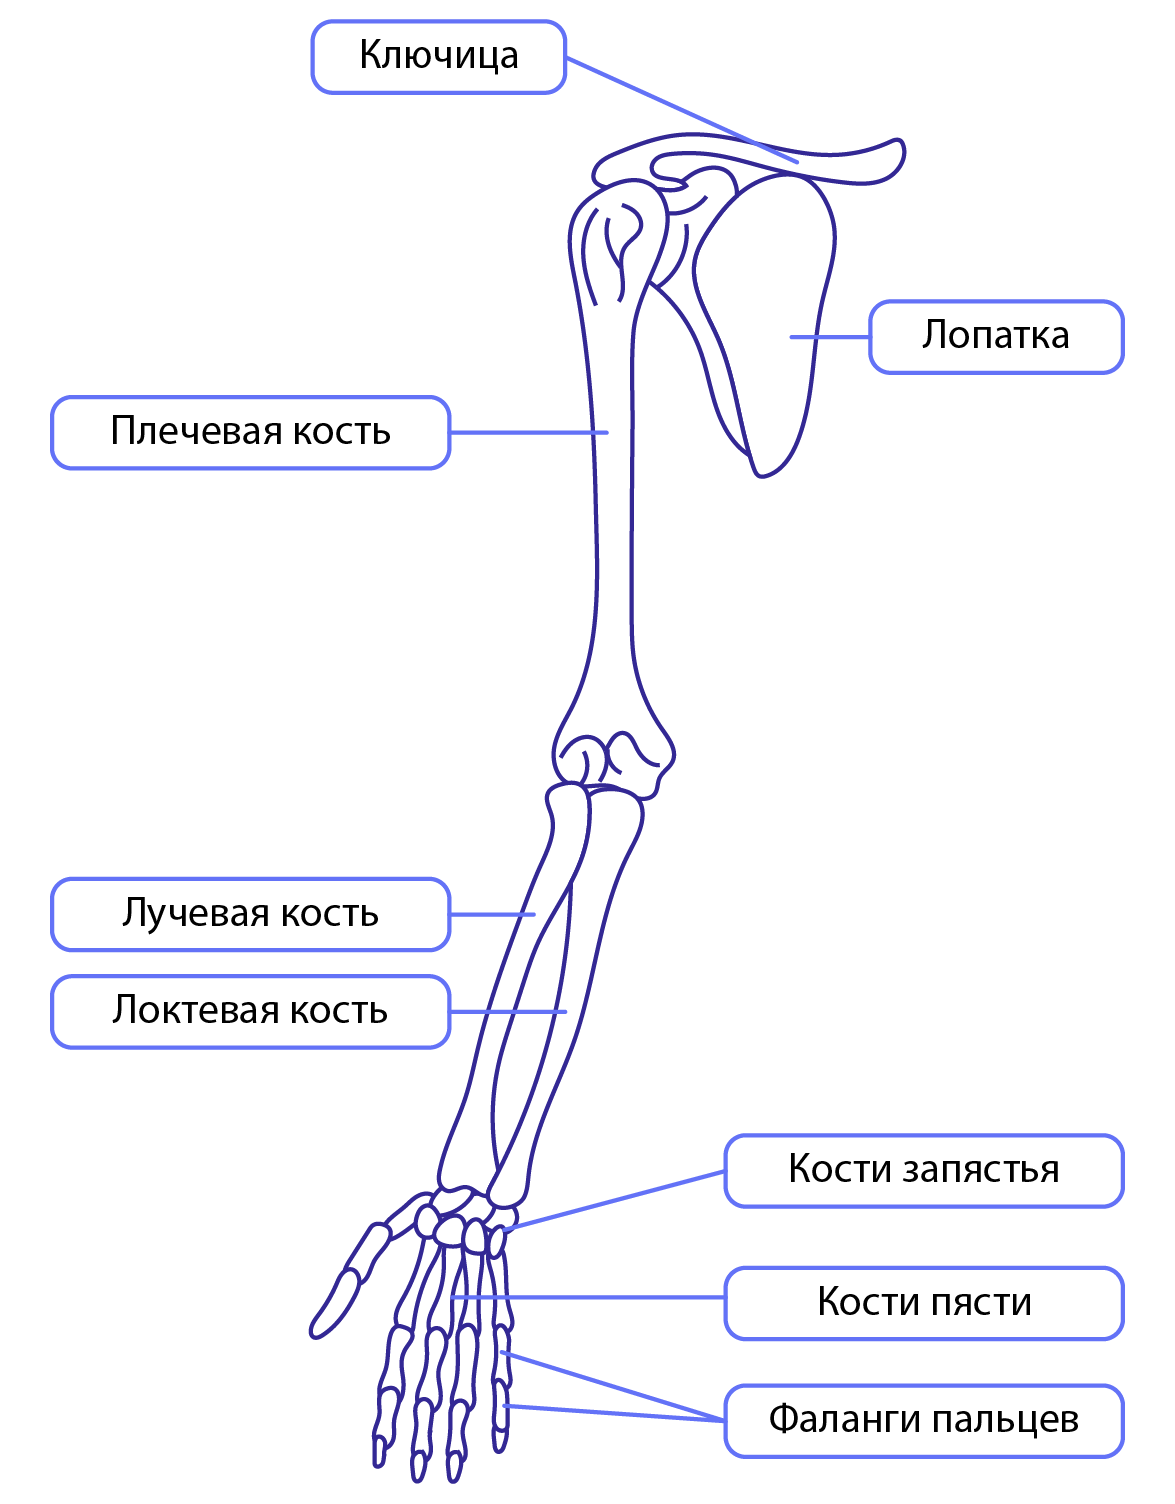 Соединение кости нижней конечности